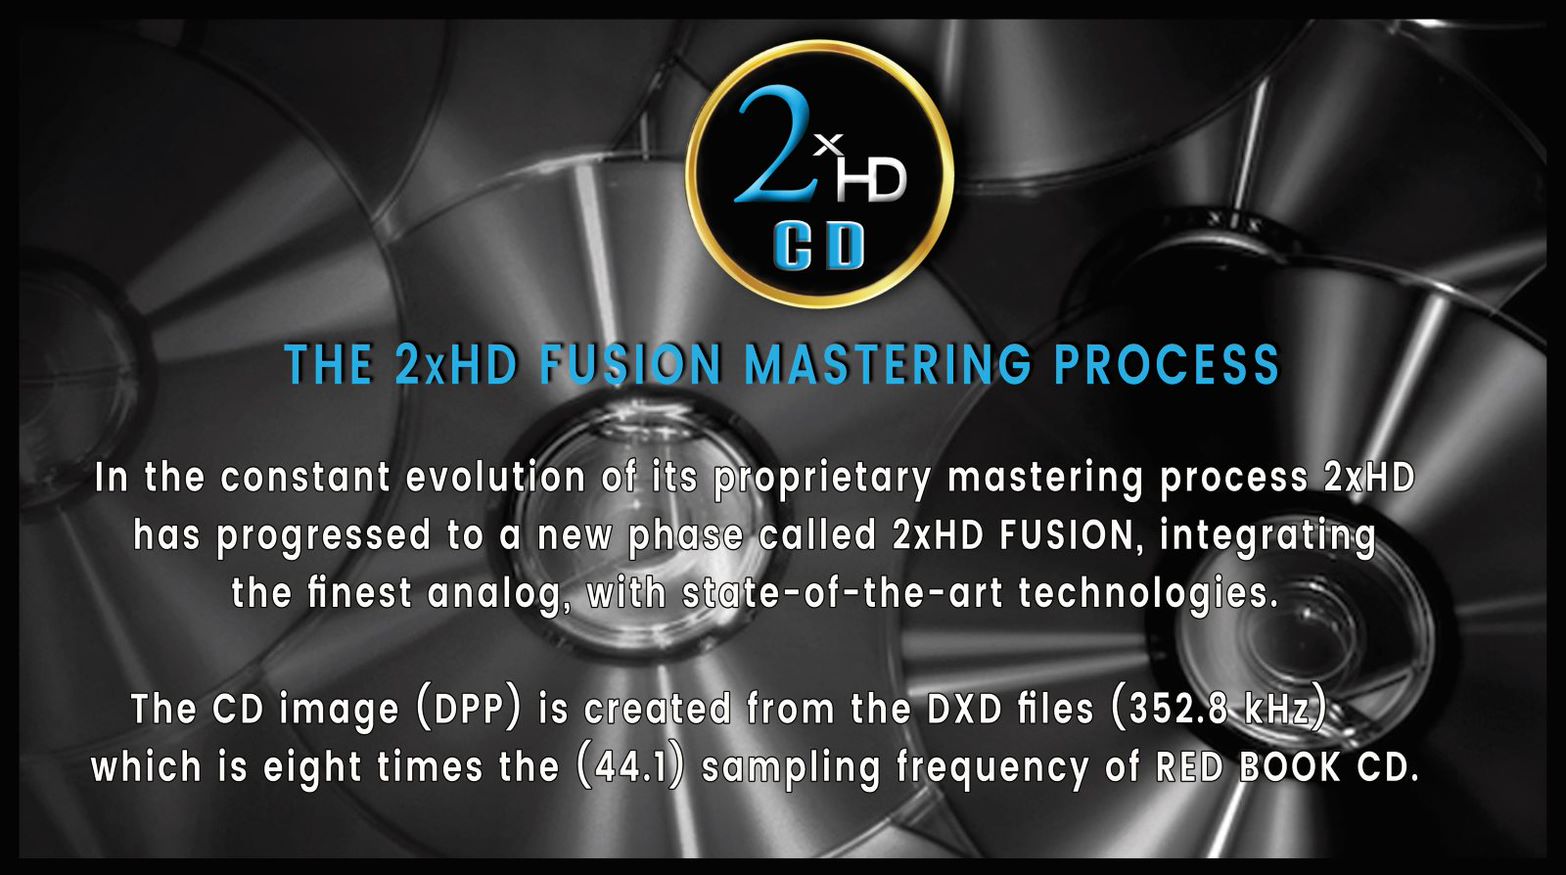 The 2xHD Mastering Process